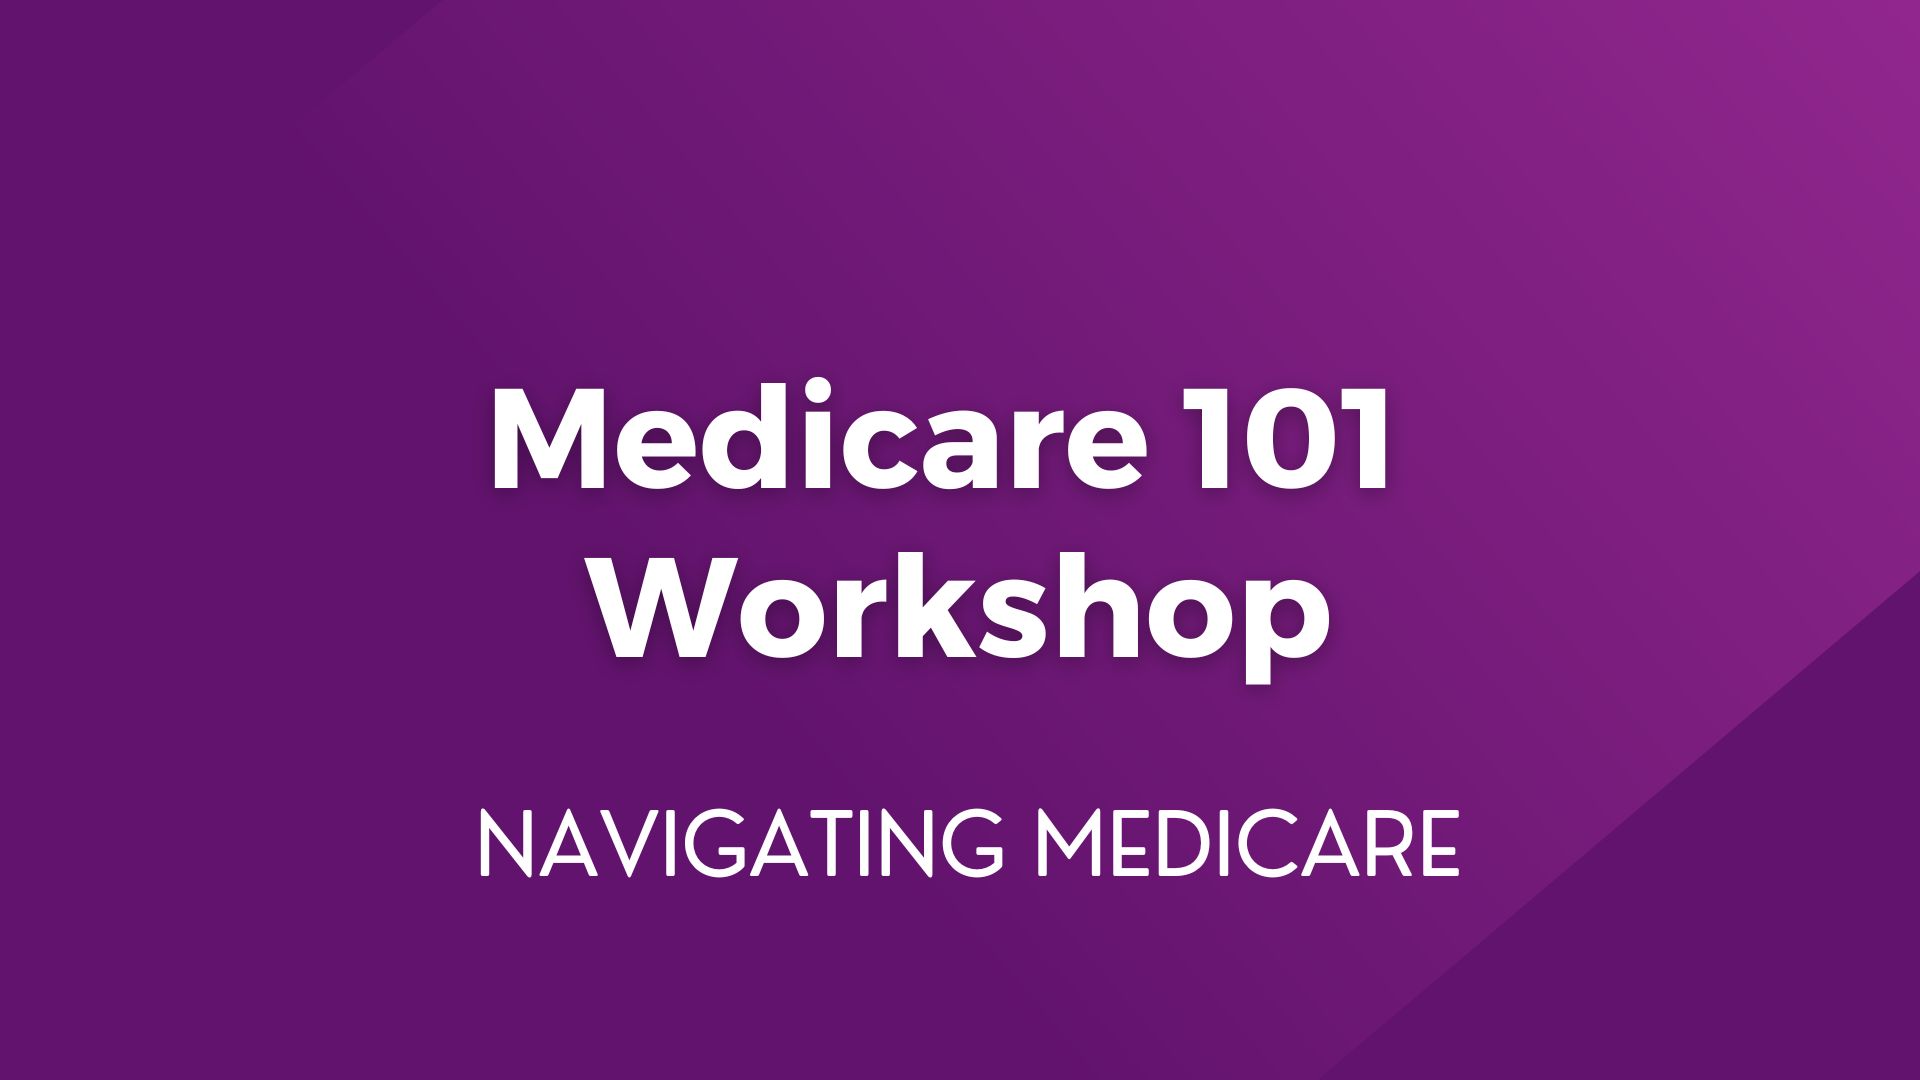 Medicare 101 Workshop – April 11